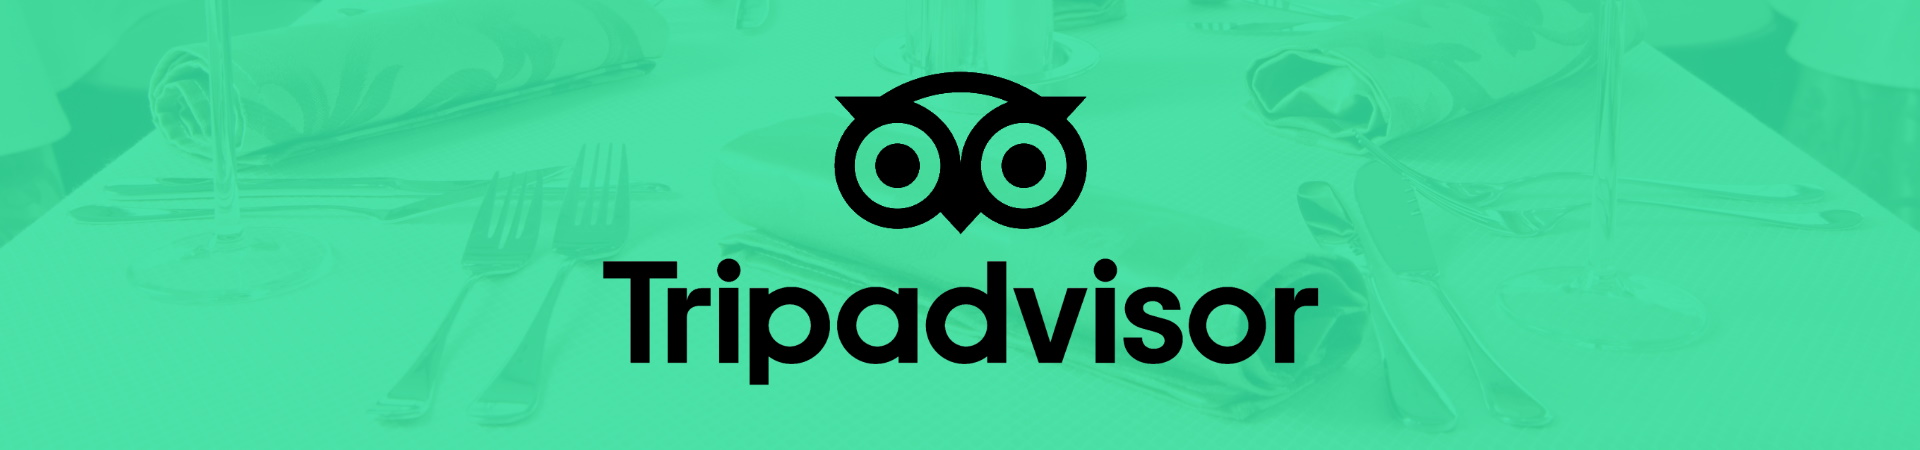 Tripadvisor logo op een foto van een luxe gedekte tafel